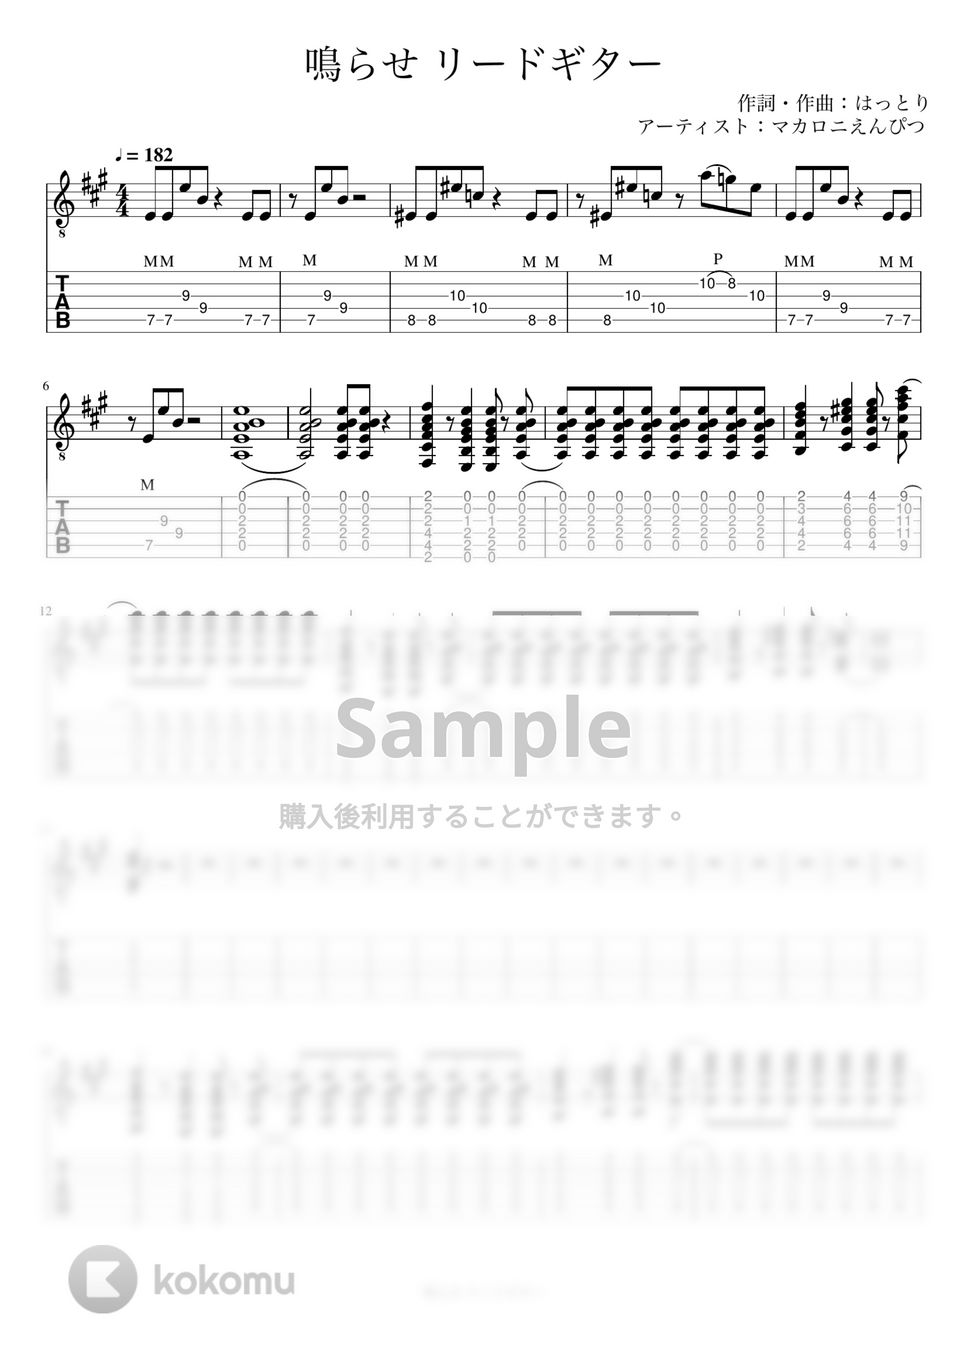 マカロニえんぴつ - 鳴らせ (リードギター) by J-ROCKチャンネル